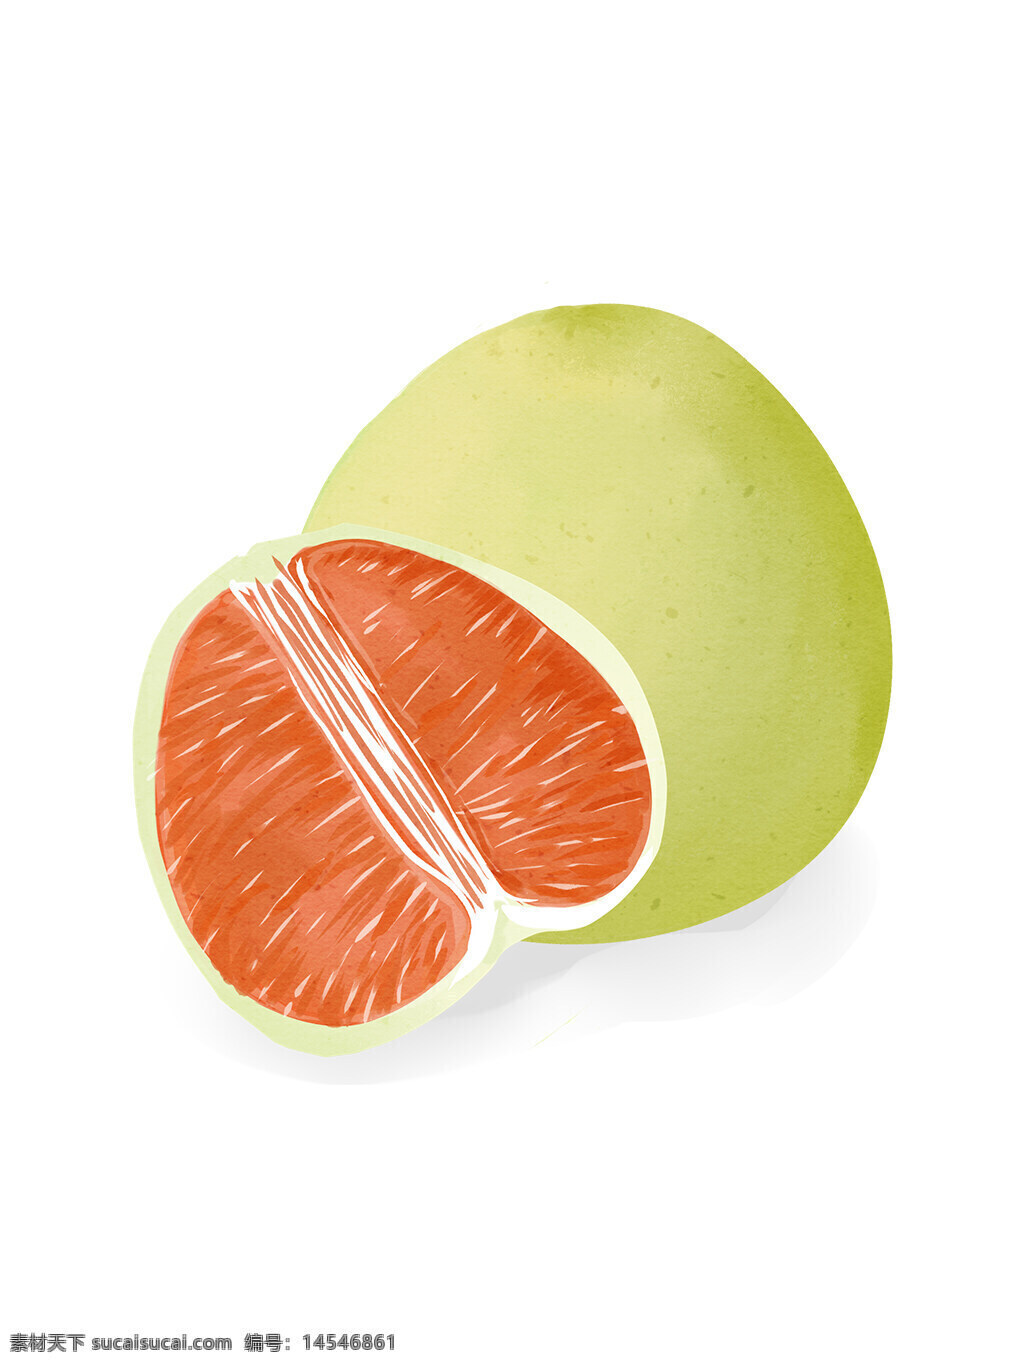 葡萄柚 柚子 水果 水果手绘